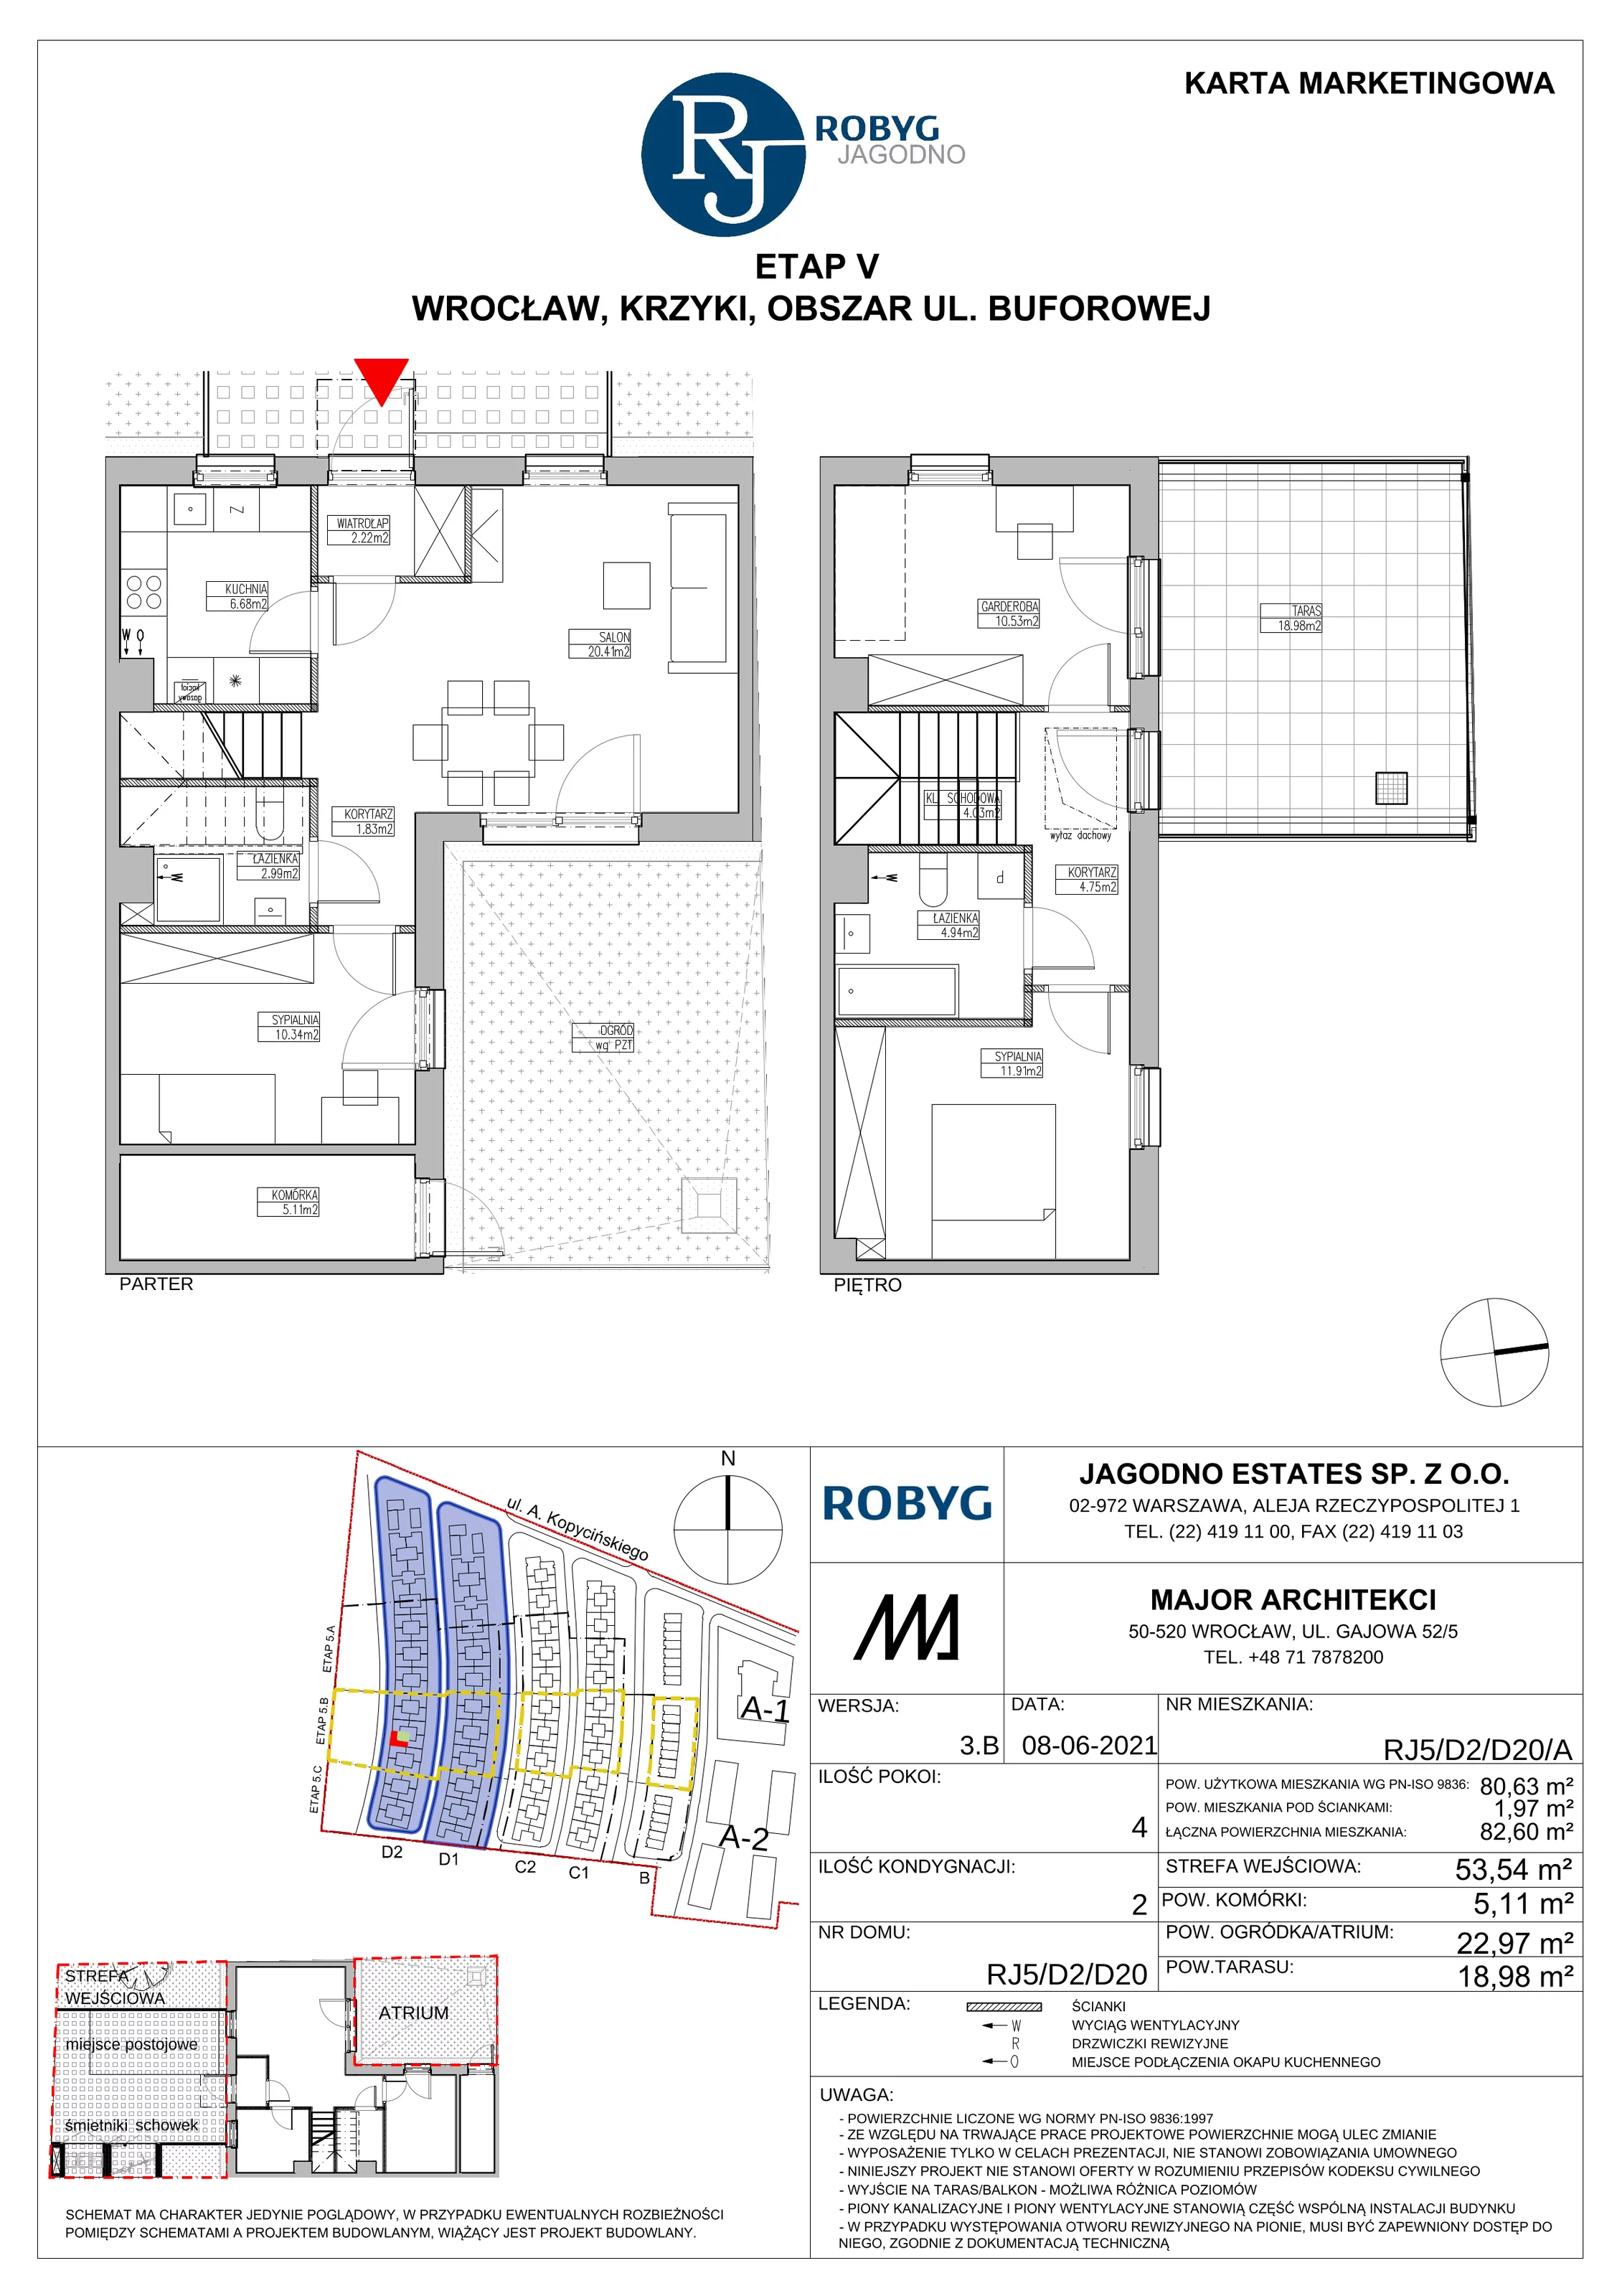 Dom 80,63 m², oferta nr RJ5/D2/D20/A, Robyg Jagodno, Wrocław, Jagodno, Krzyki, ul. Kopycińskiego